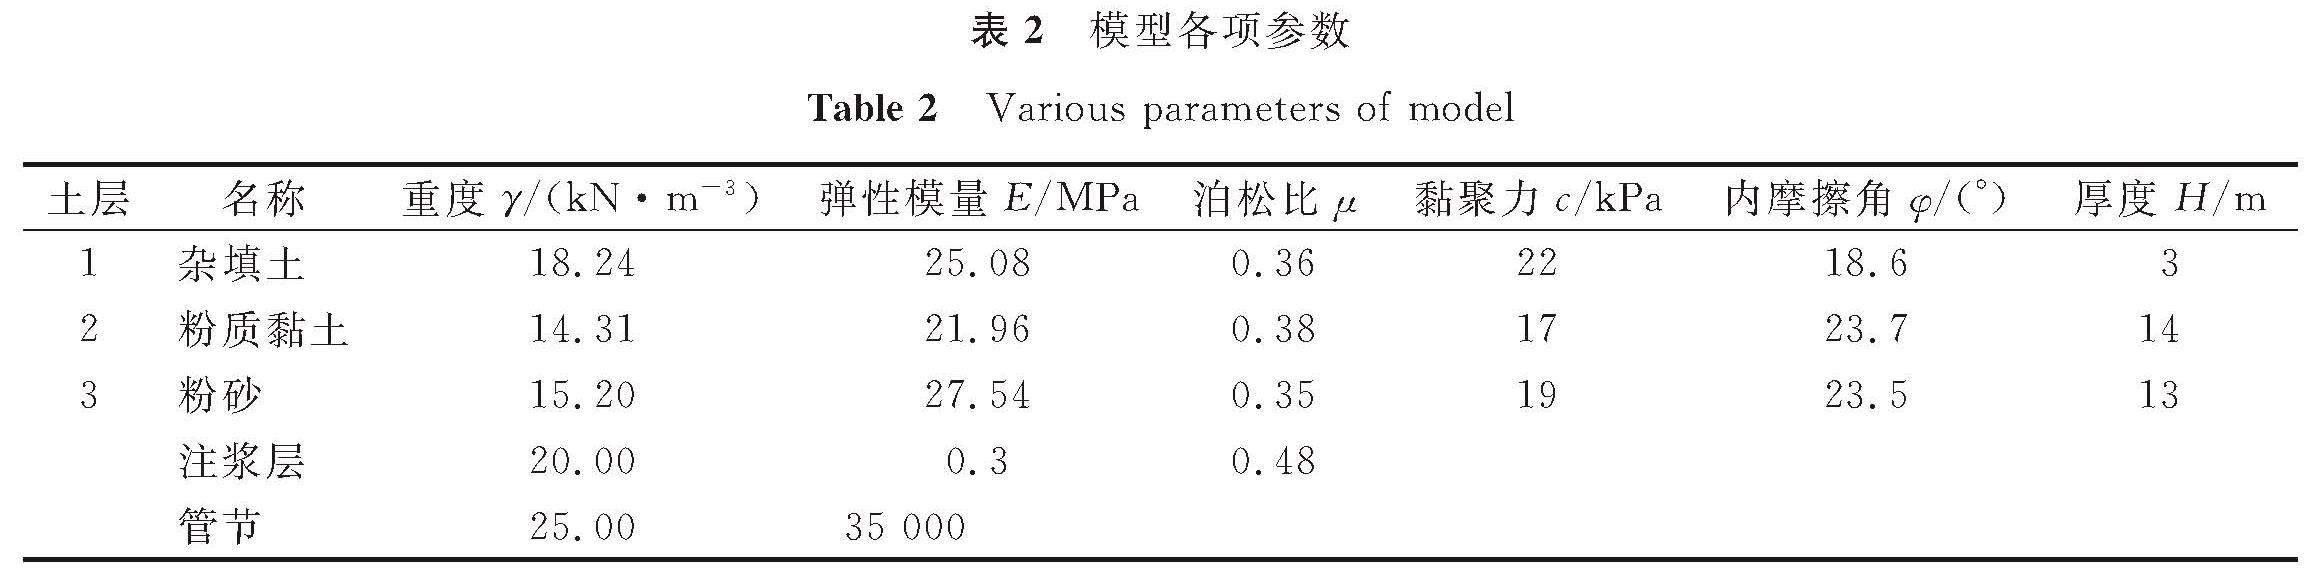 表2 模型各项参数<br/>Table 2 Various parameters of model